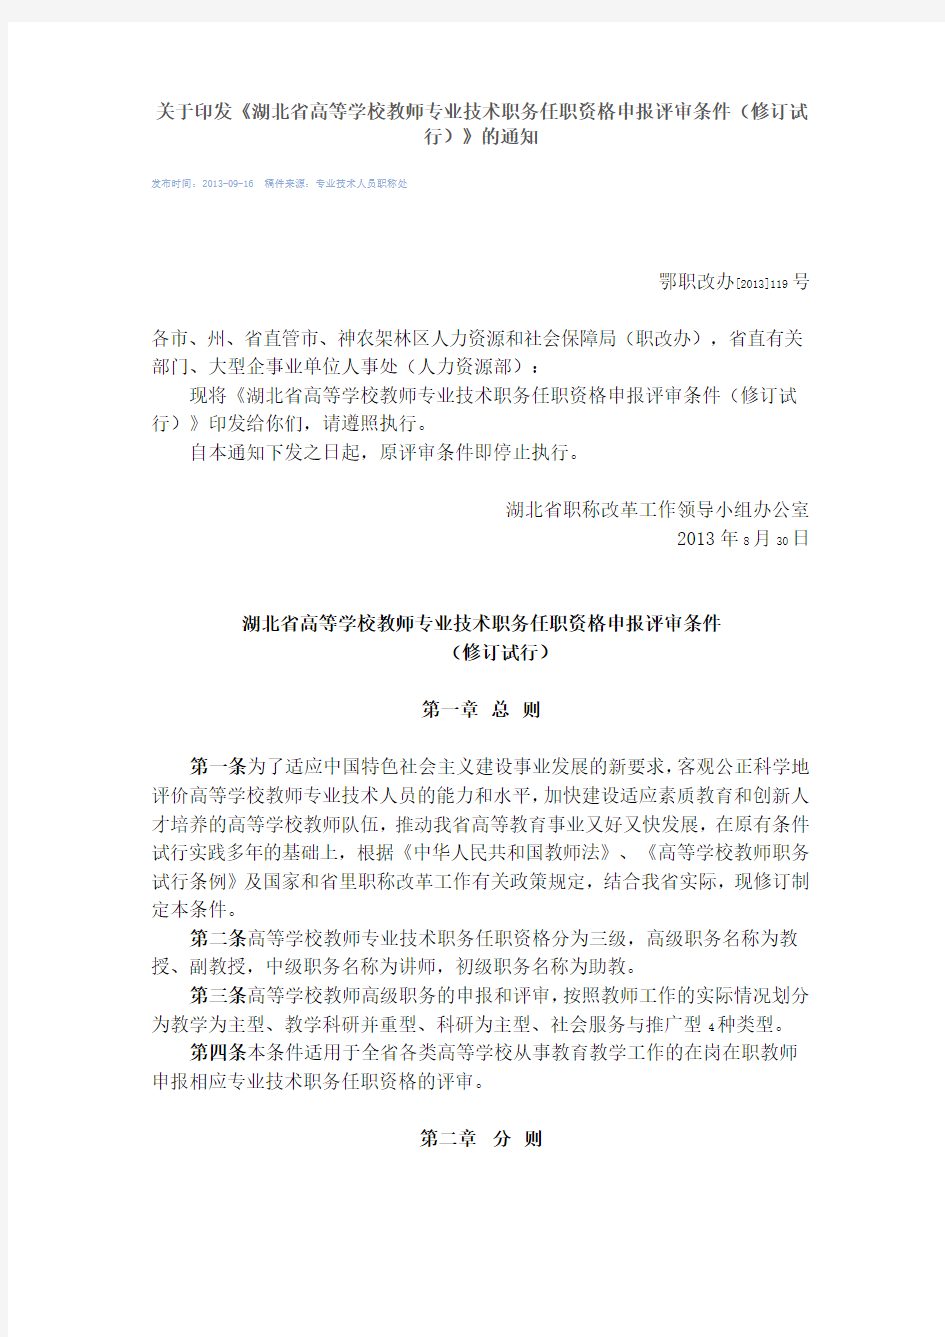 湖北省高校教师职称评审条例——鄂职改办[2013]119号文件